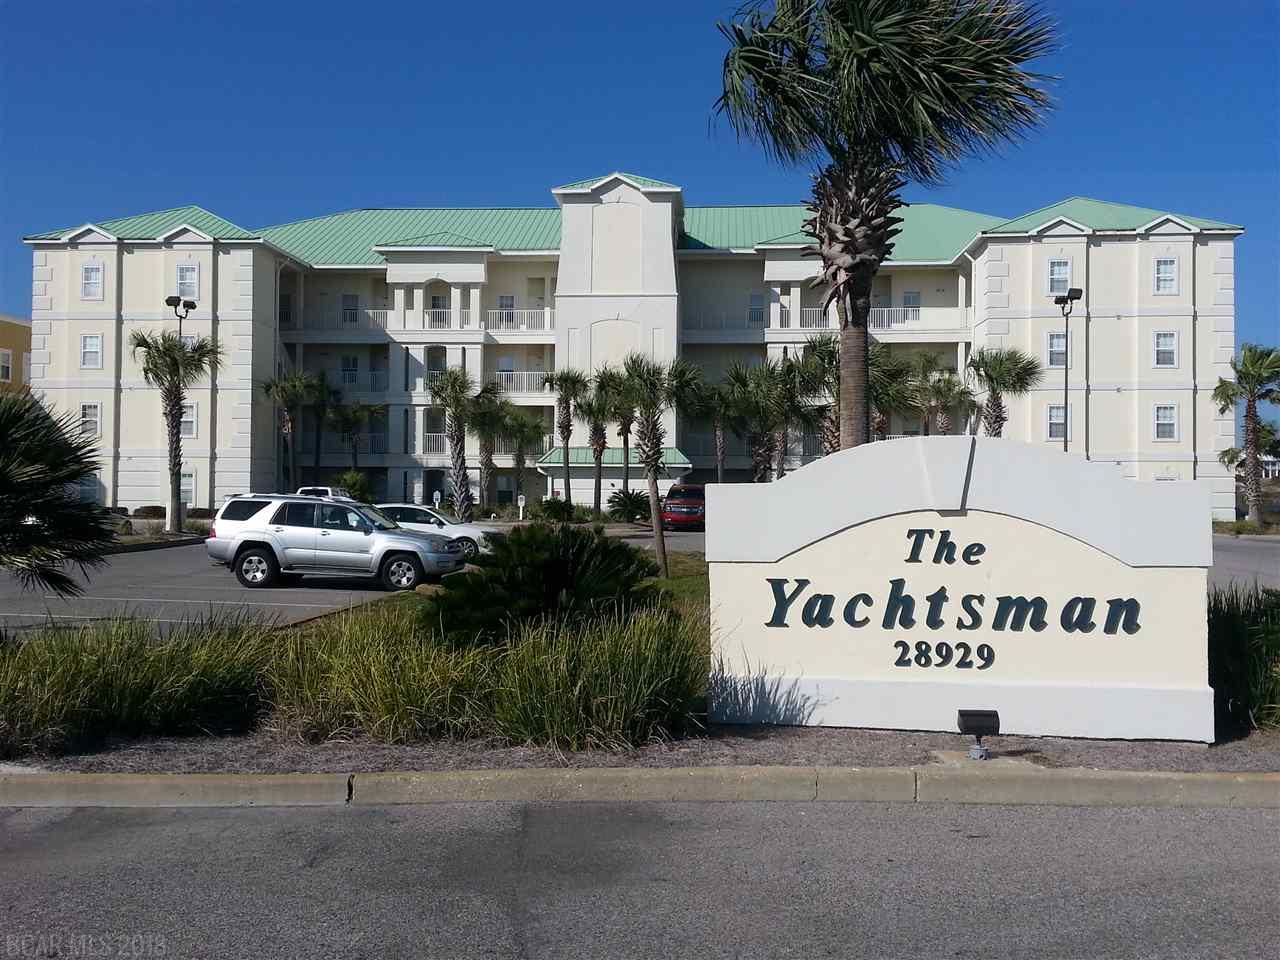 yachtsman condominium trust